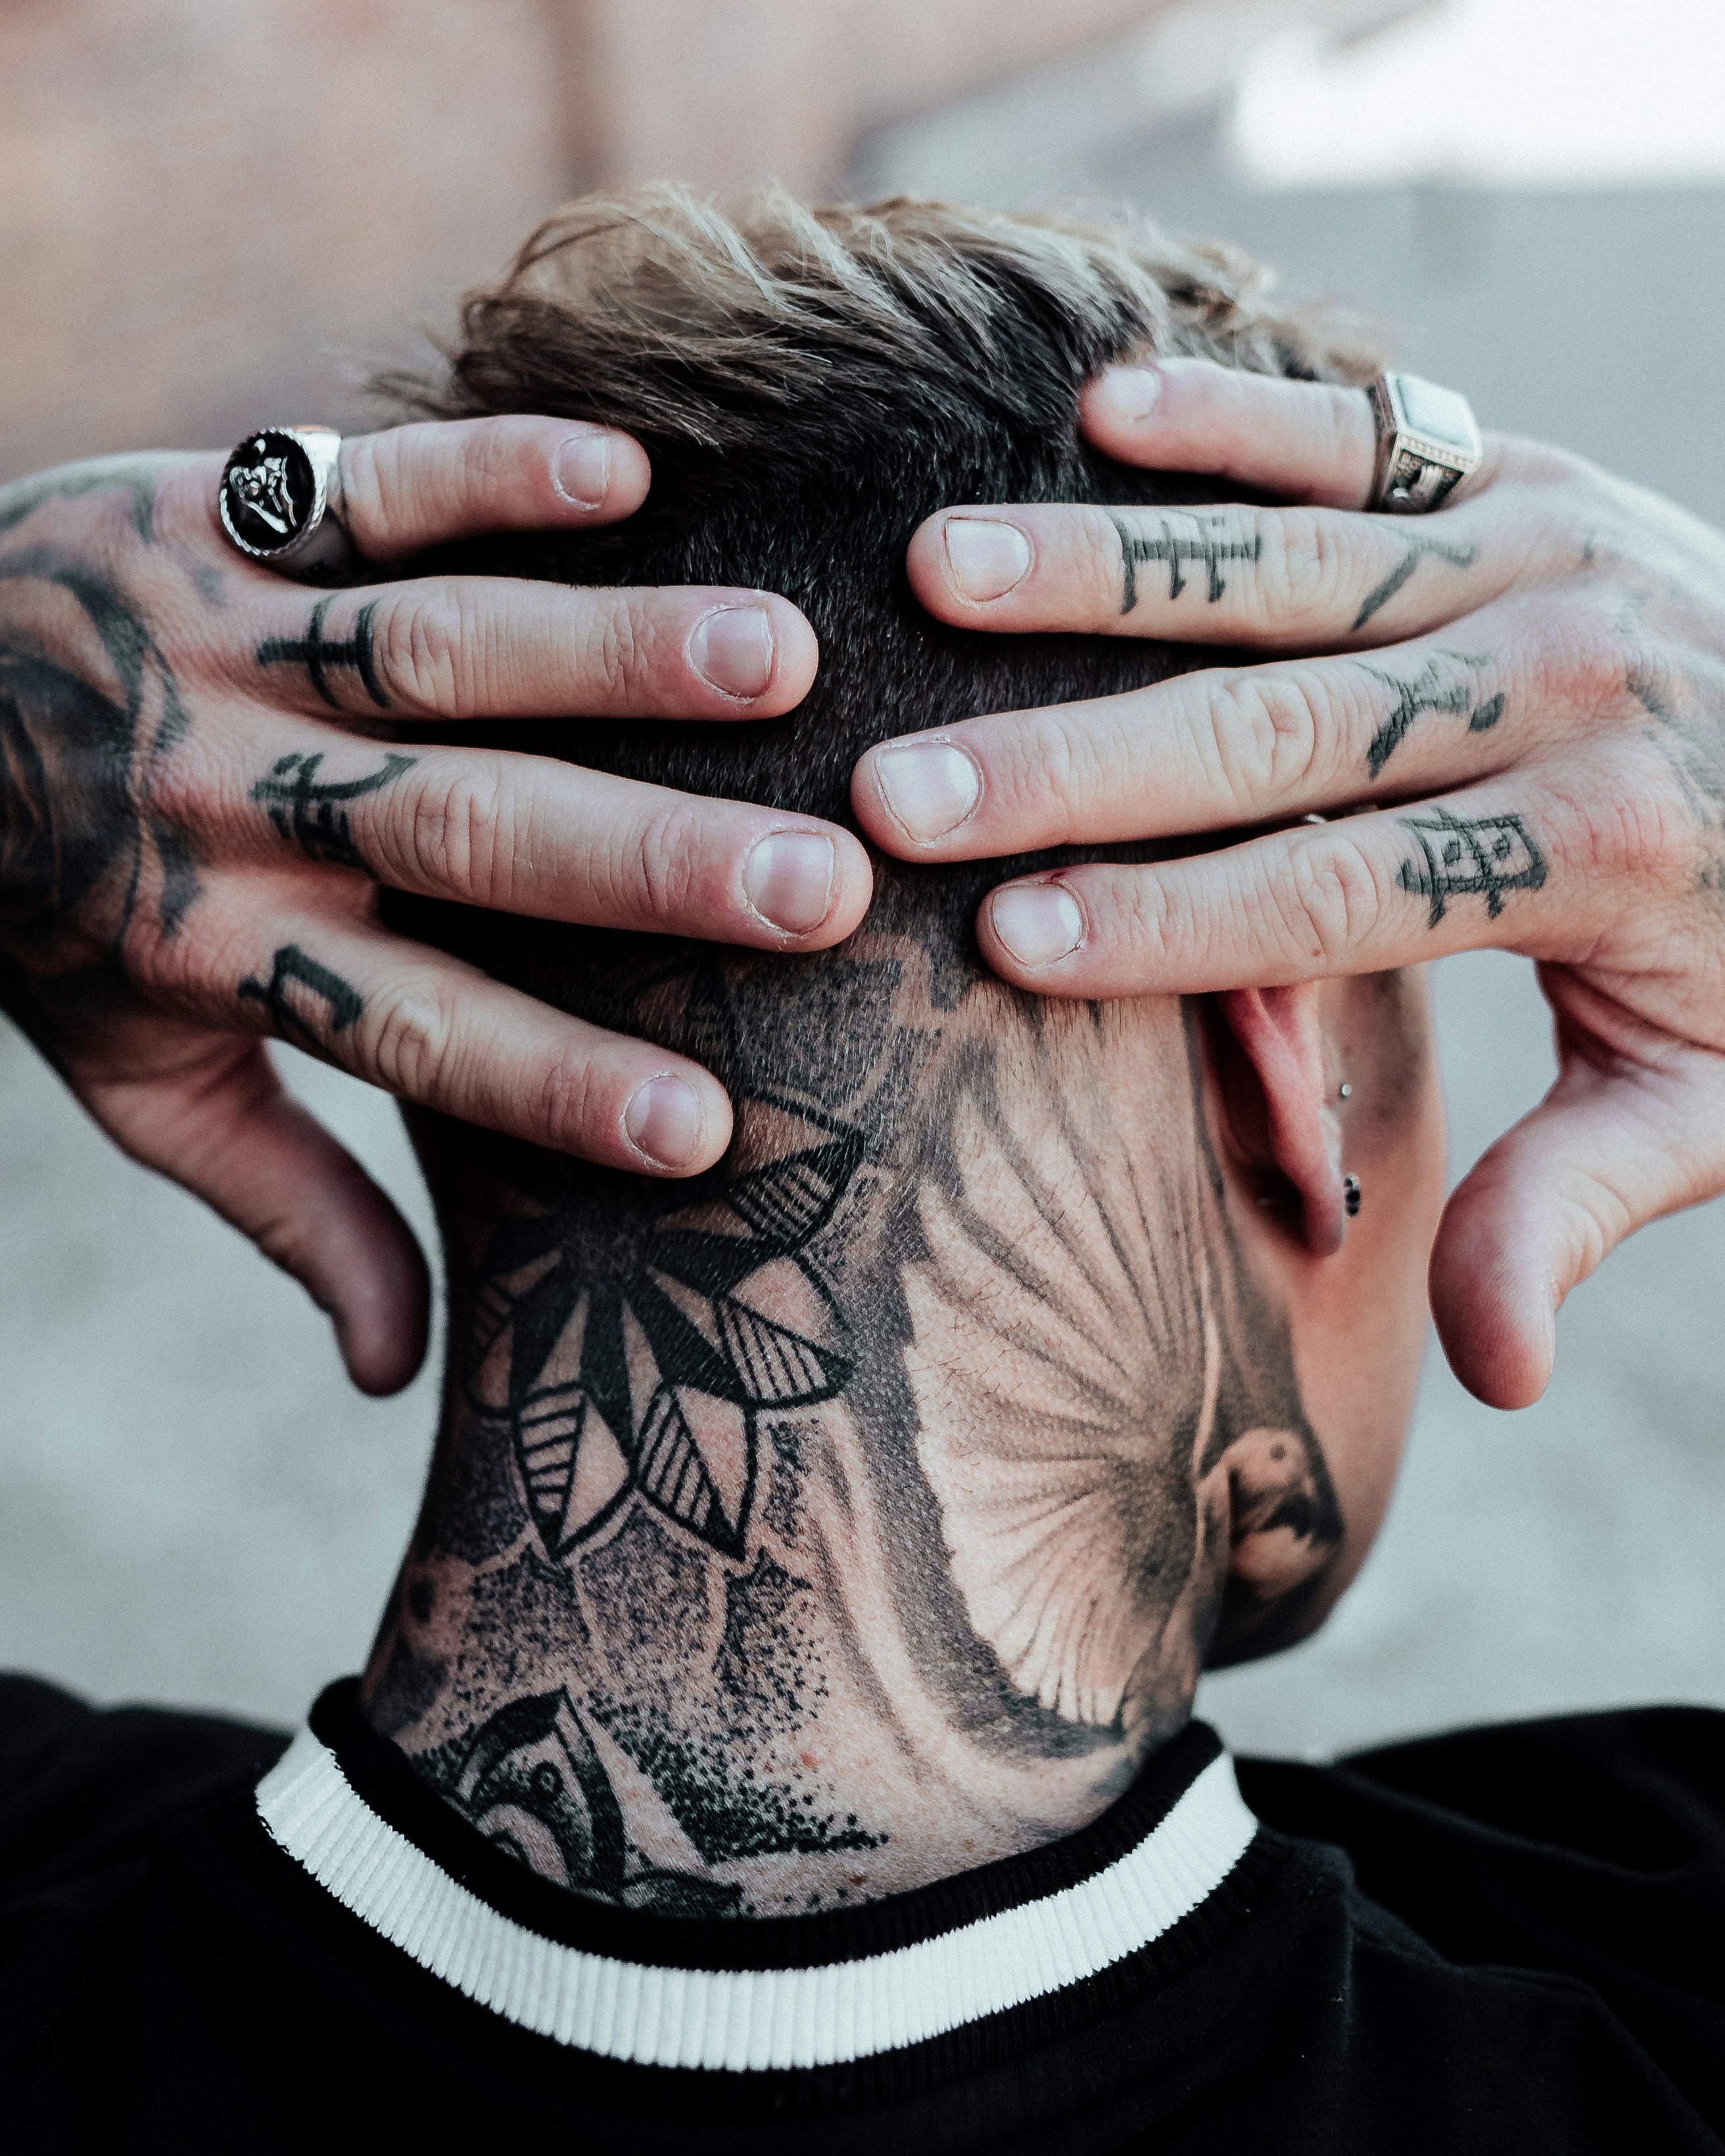 Full Neck Tattoos For Men